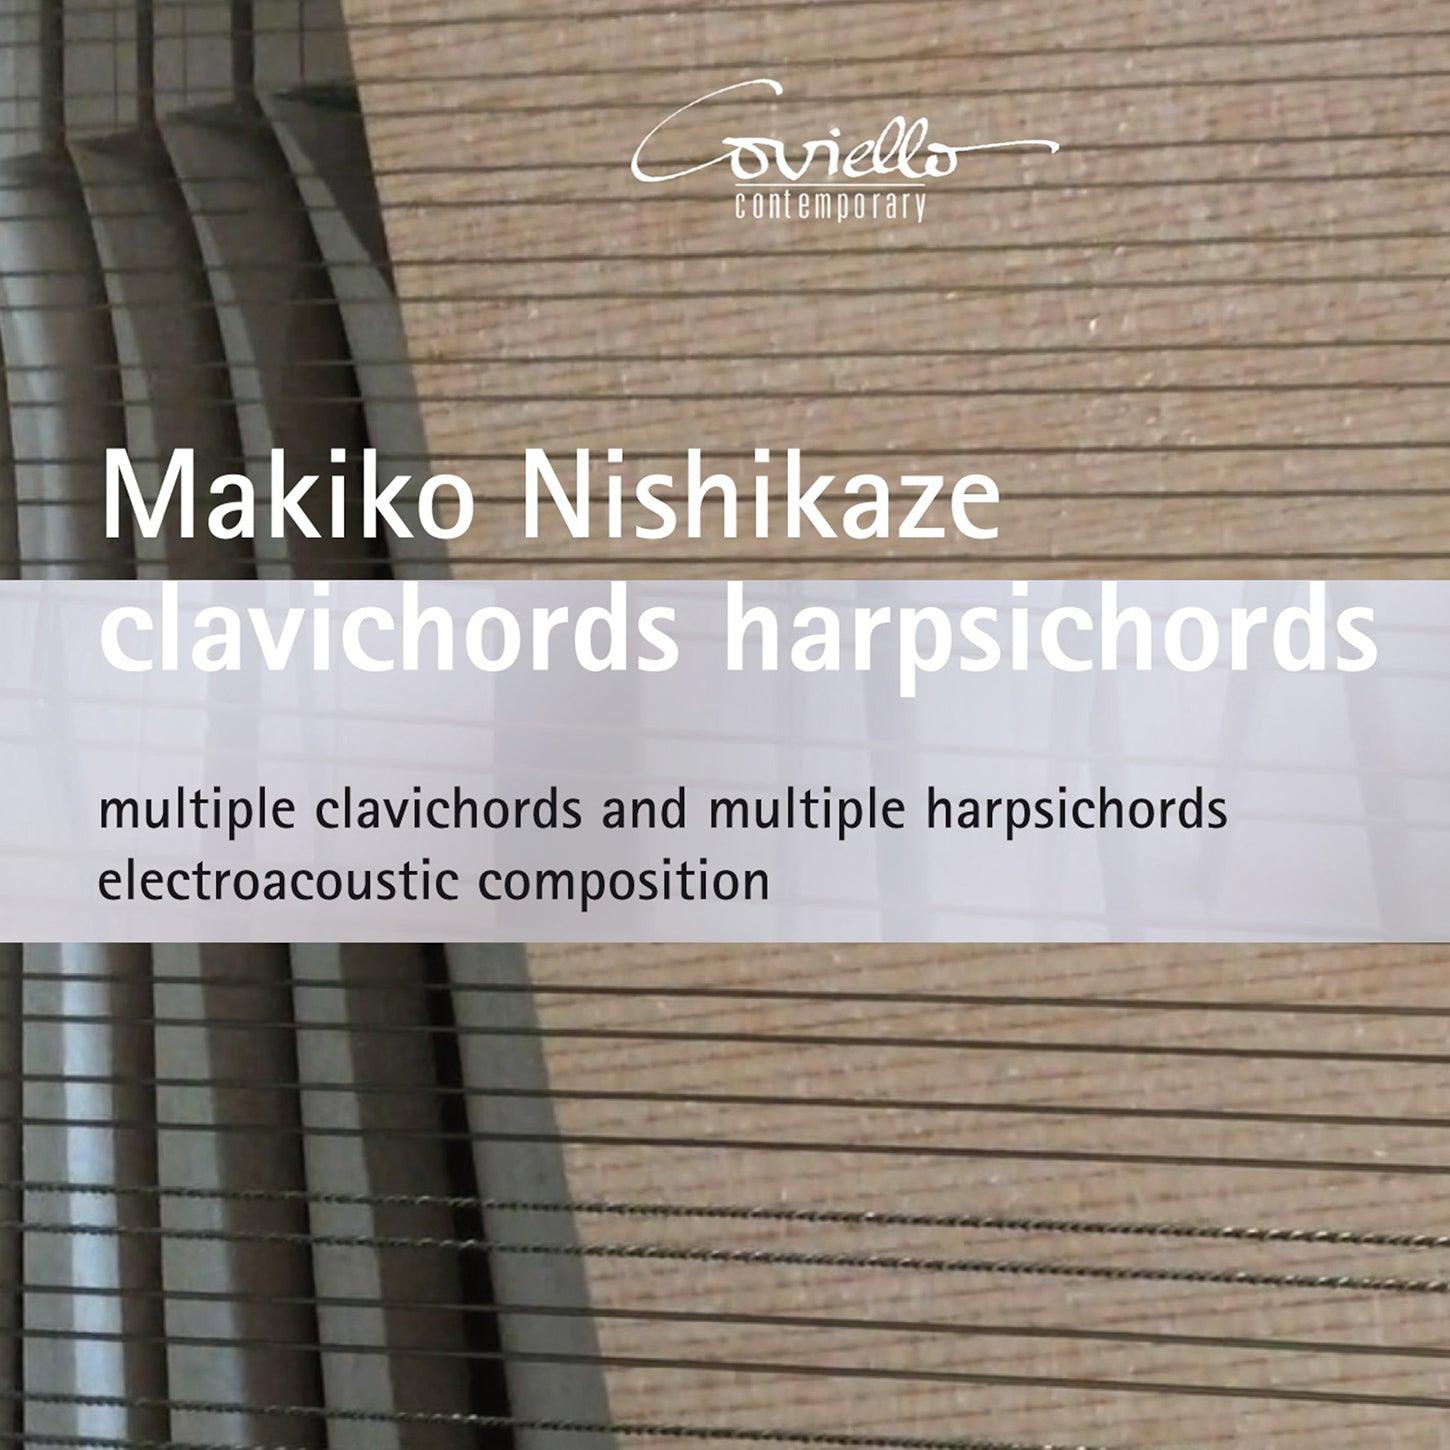 Makiko Nishikaze: Harpsichords Clavichords - ArkivMusic